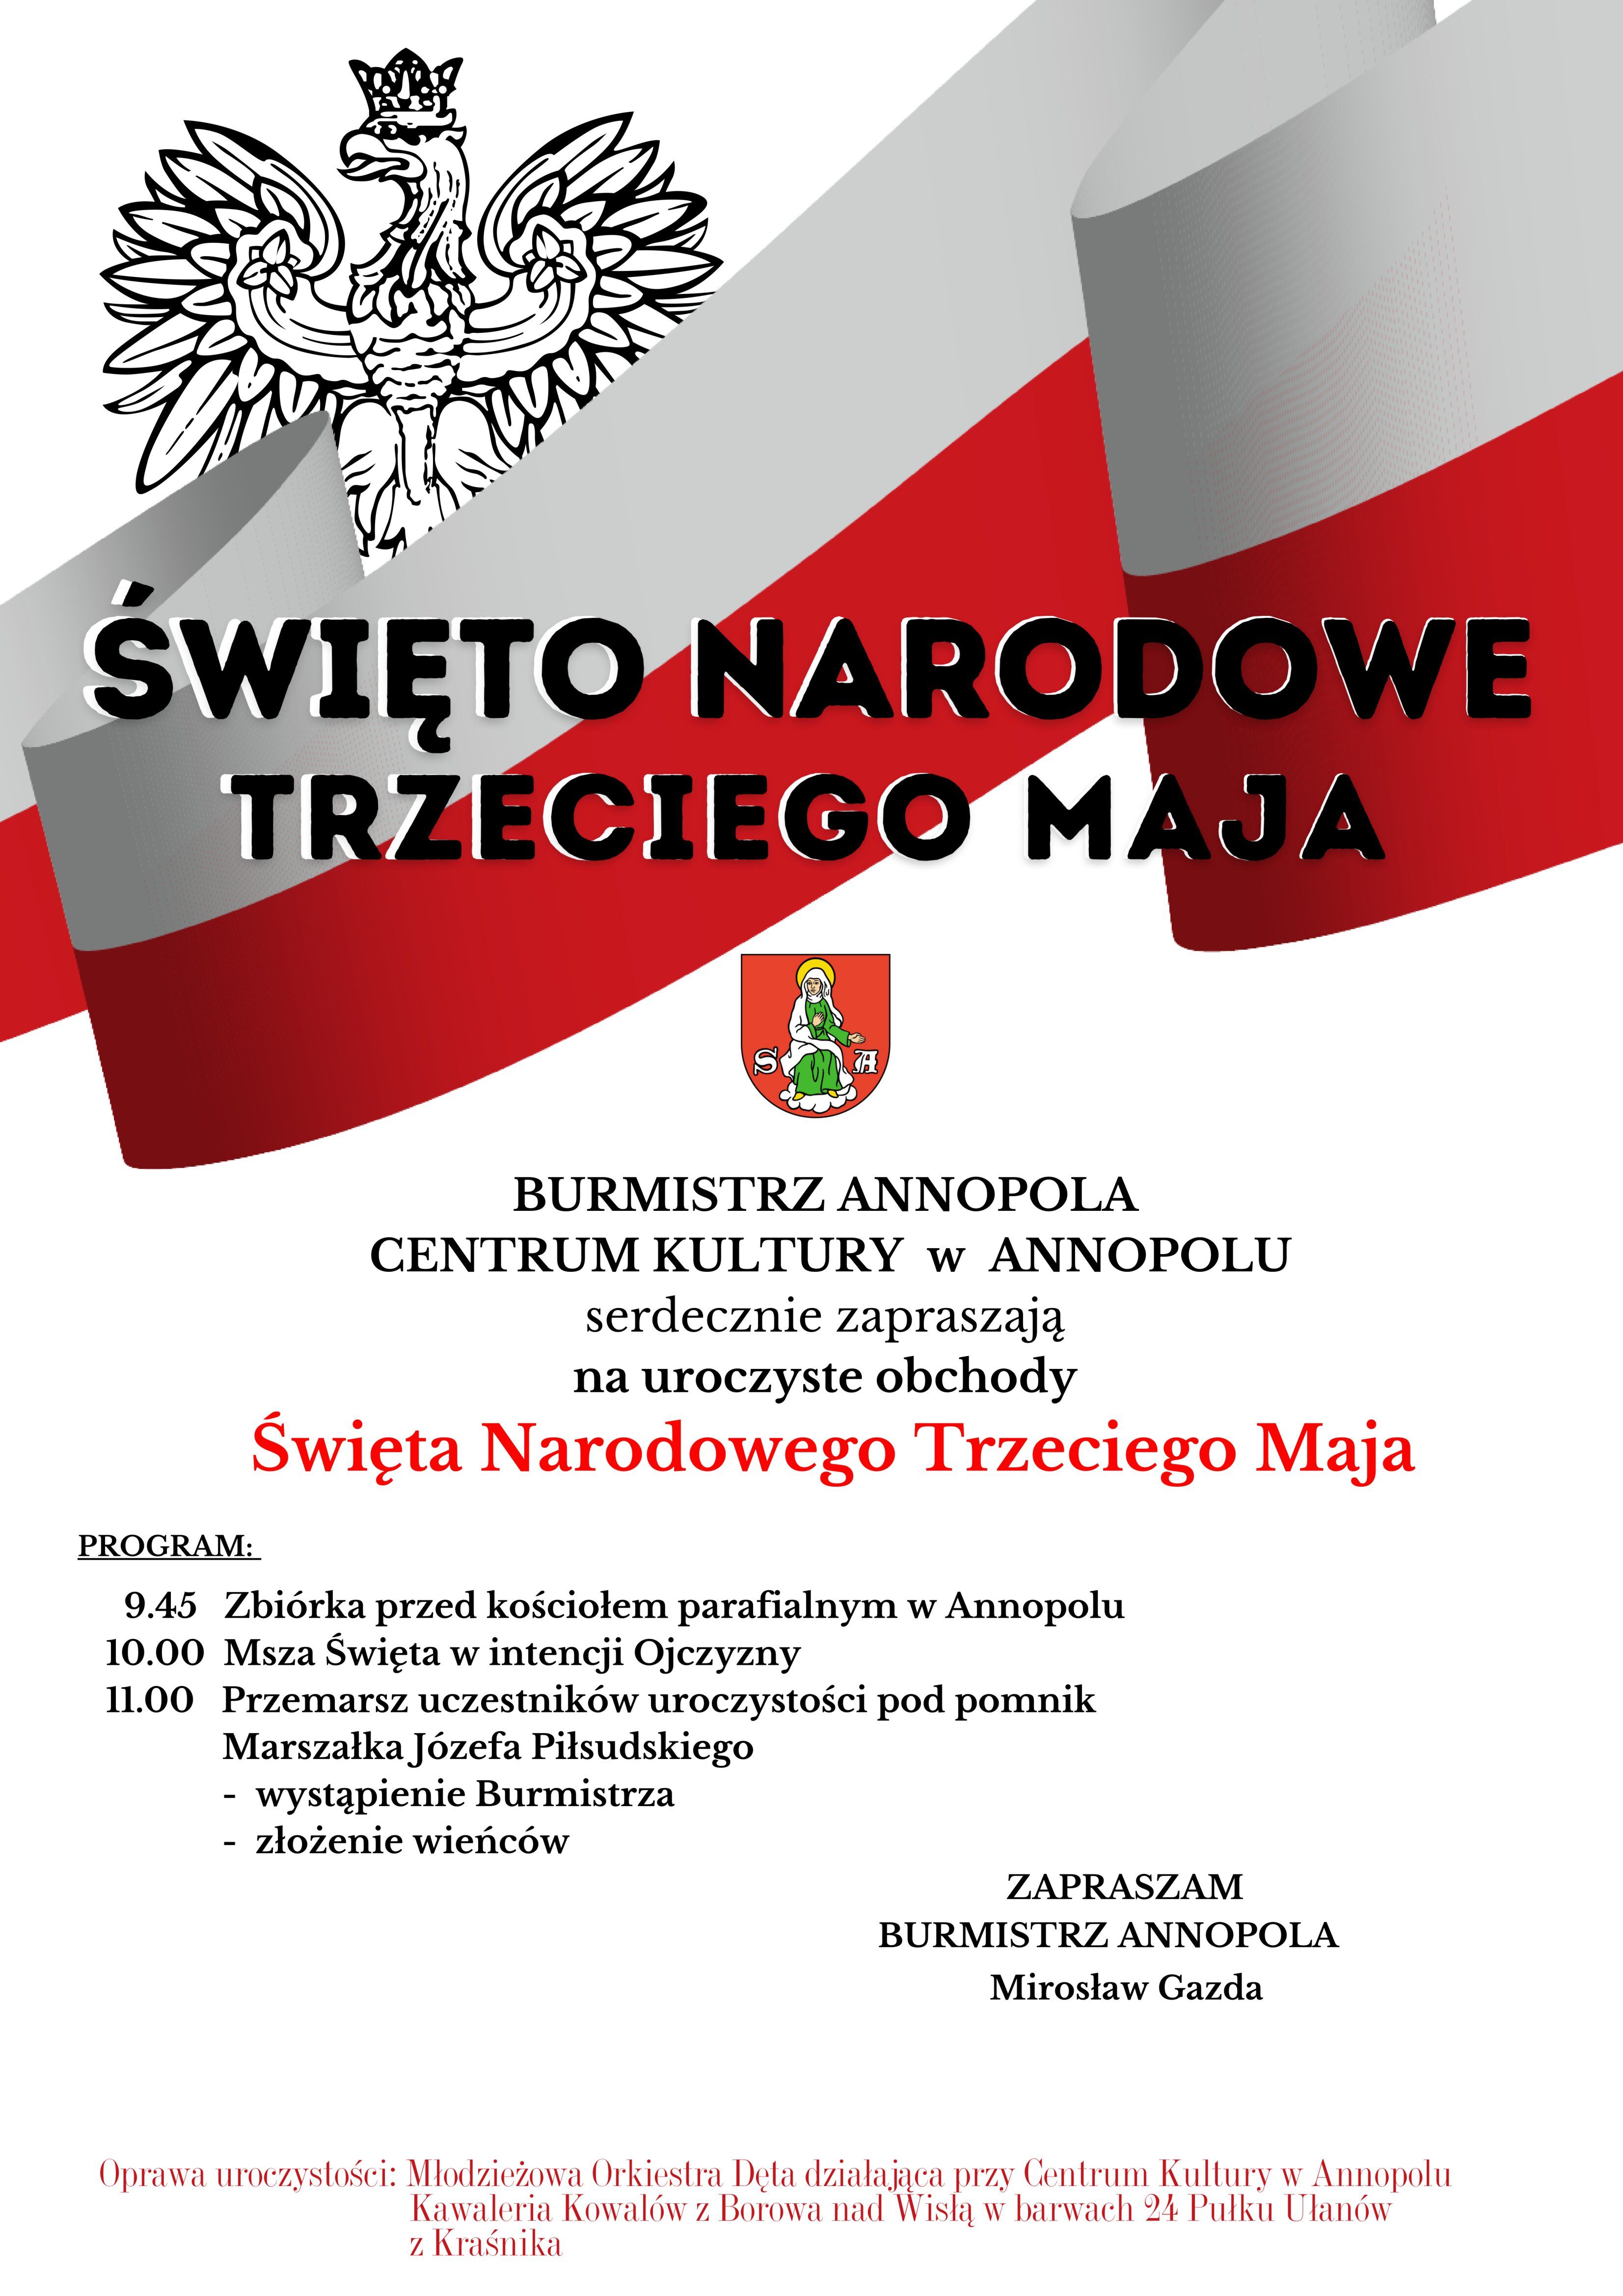 Plakat informacyjny ogłaszający Święto Narodowe Trzeciego Maja w mieście Annopol. Zawiera szczegóły programu, godzinę rozpoczęcia, lokalizację oraz nazwy osób zaproszonych.